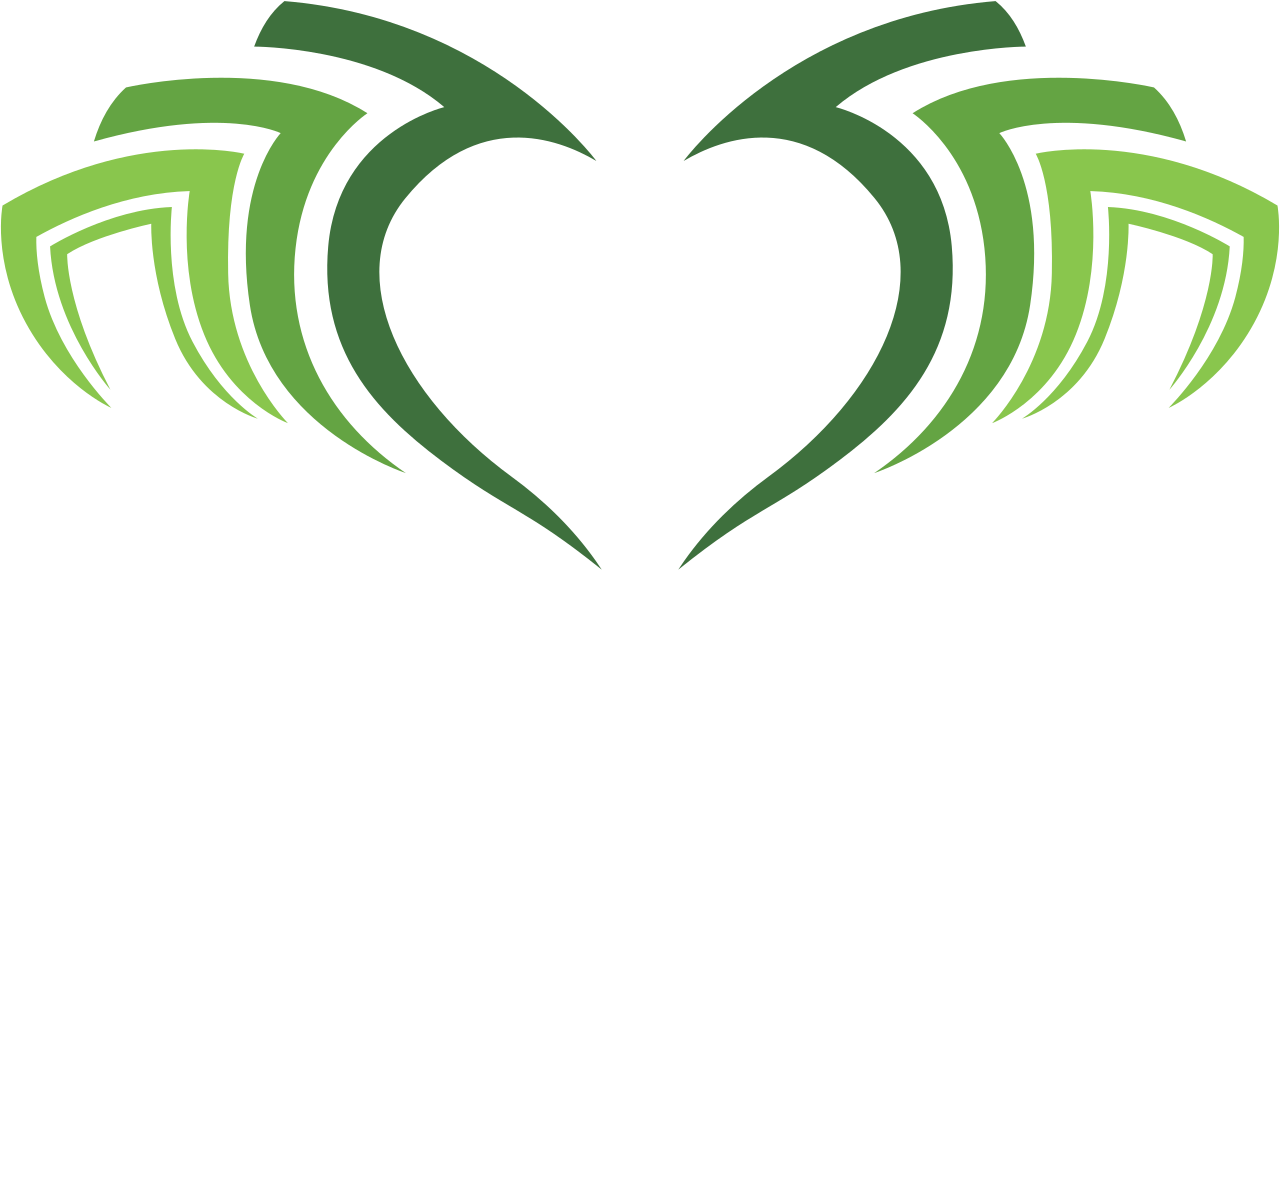 Cashing's logo